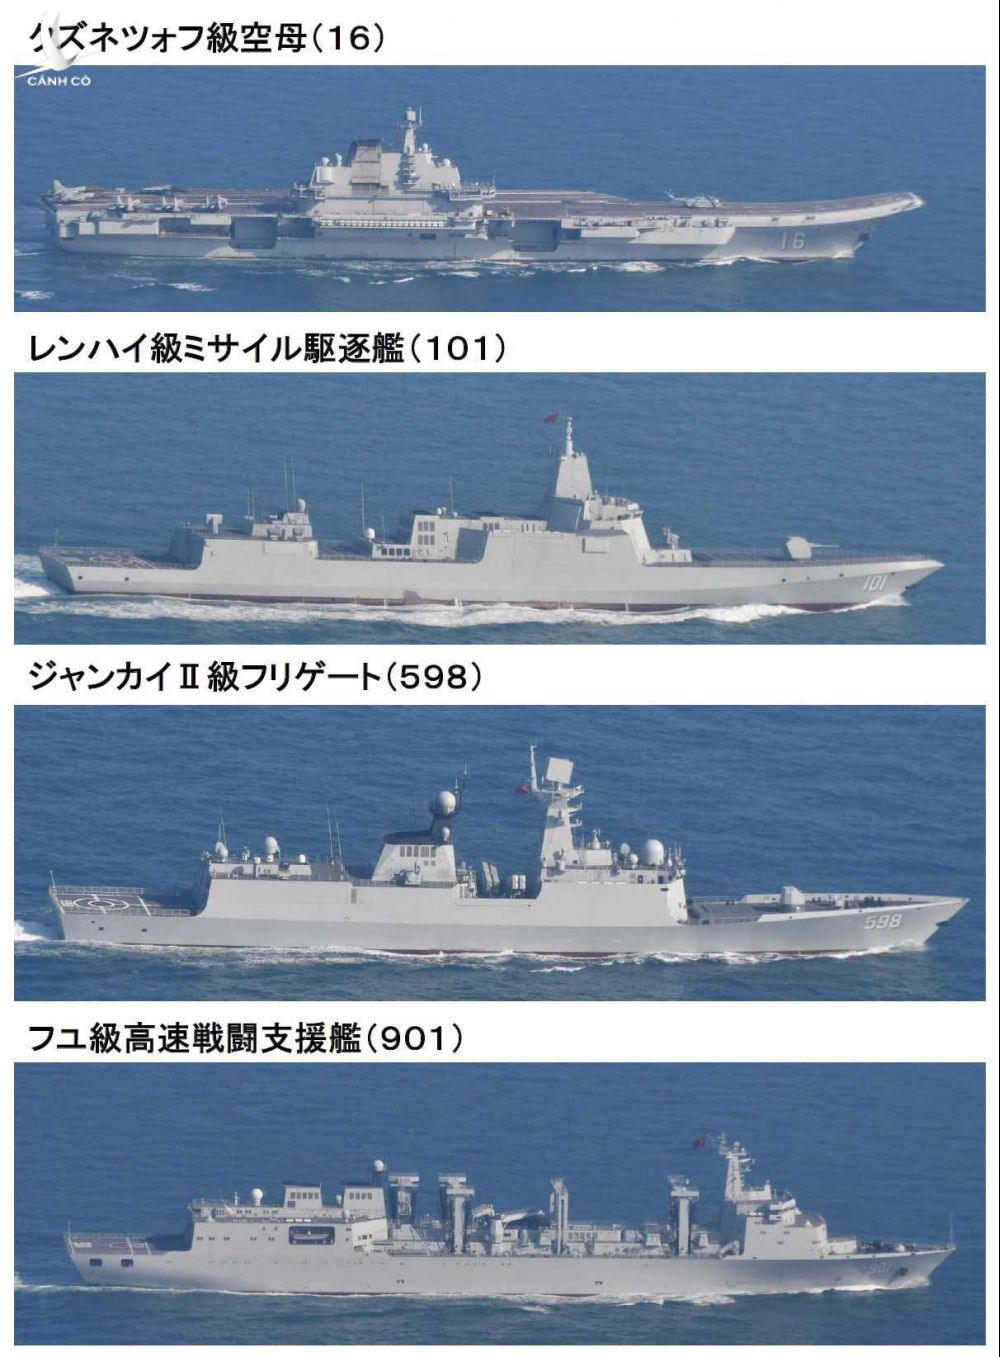 'Tàu sân bay' Nhật Bản xuất hiện gần tàu Liêu Ninh của Trung Quốc - ảnh 2